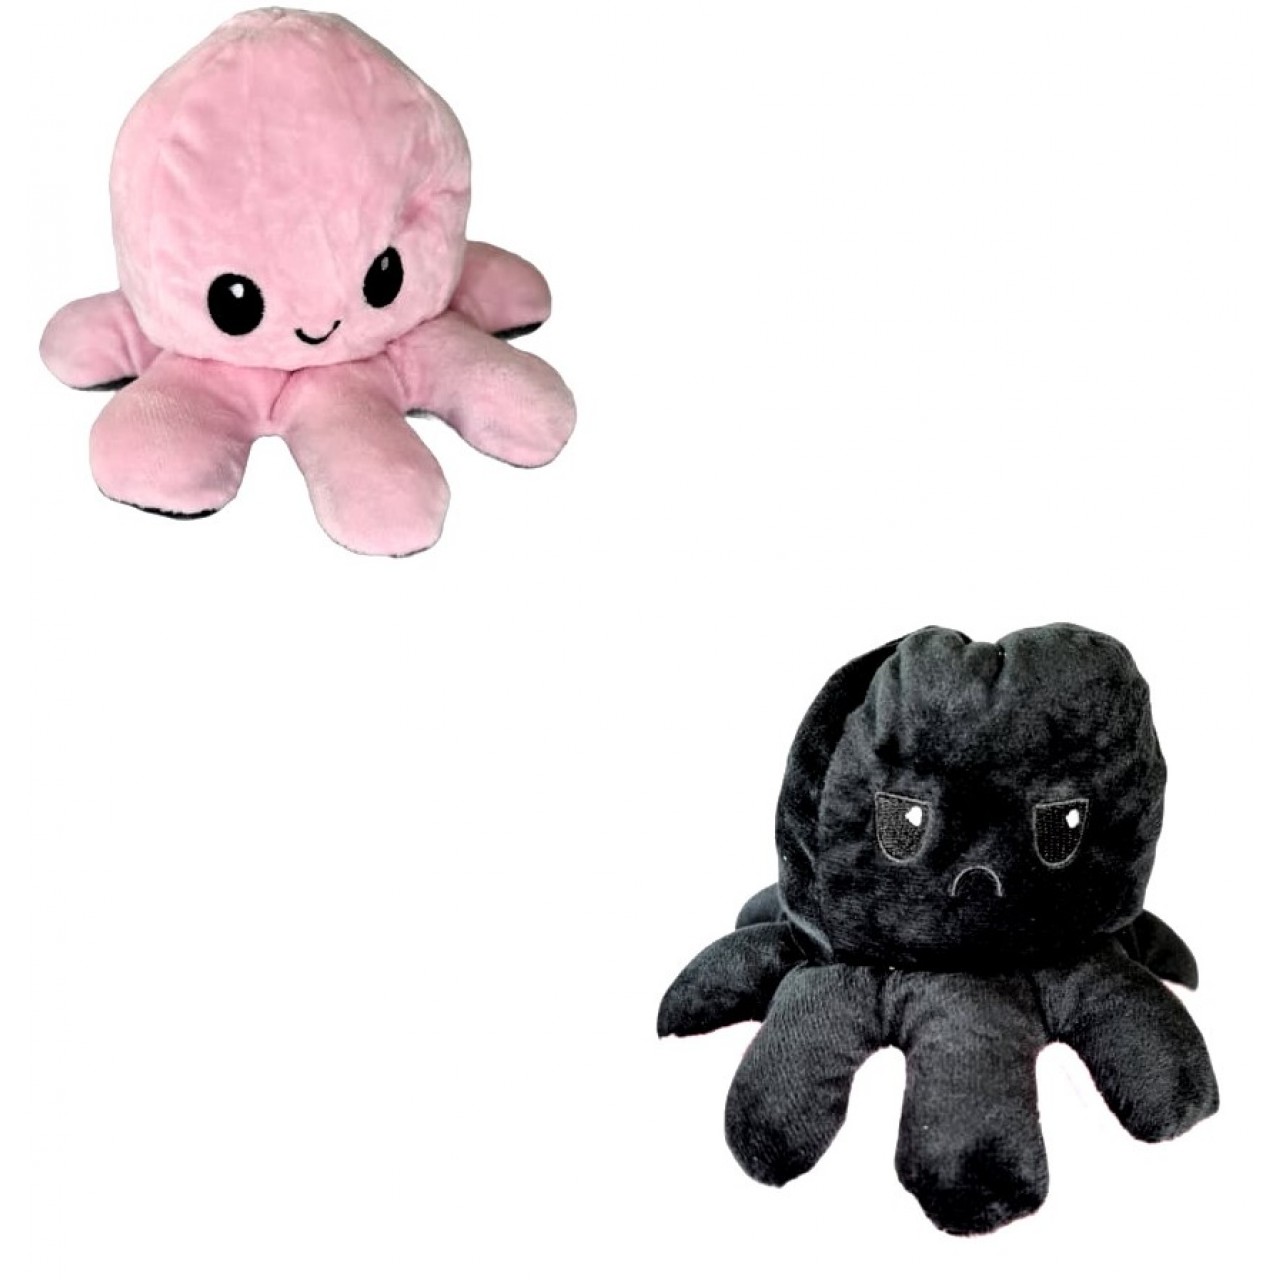 Χταπόδι διπλής όψης λούτρινο emotional reversible octopus plush 20 εκ - 5321 - Μαύρο / Ροζ ανοιχτό